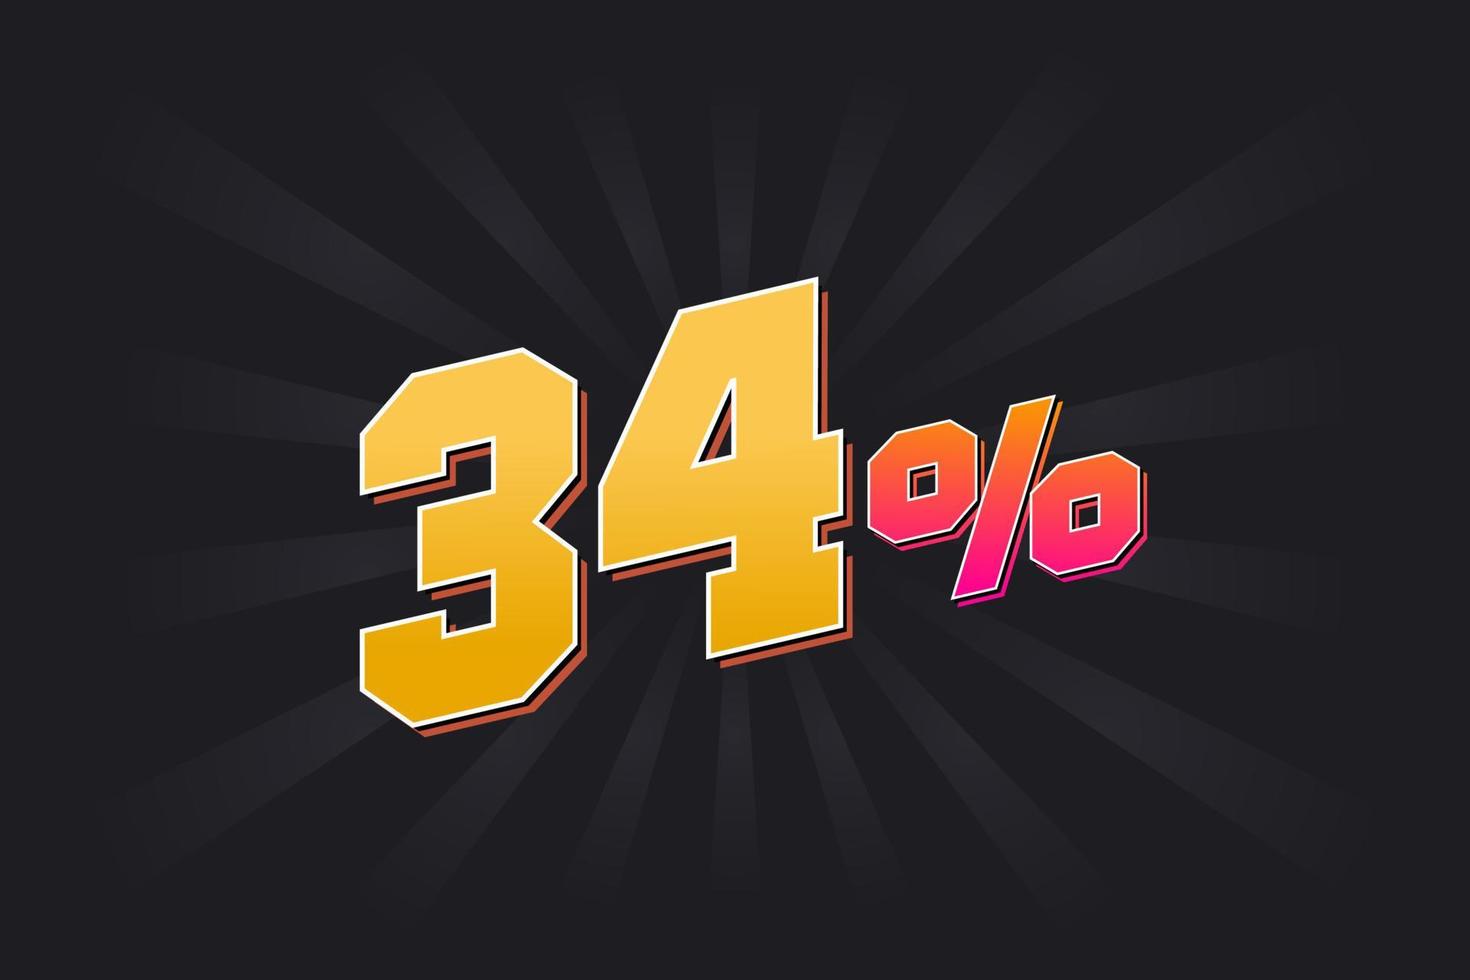 34 rabatt baner med mörk bakgrund och gul text. 34 procent försäljning PR design. vektor